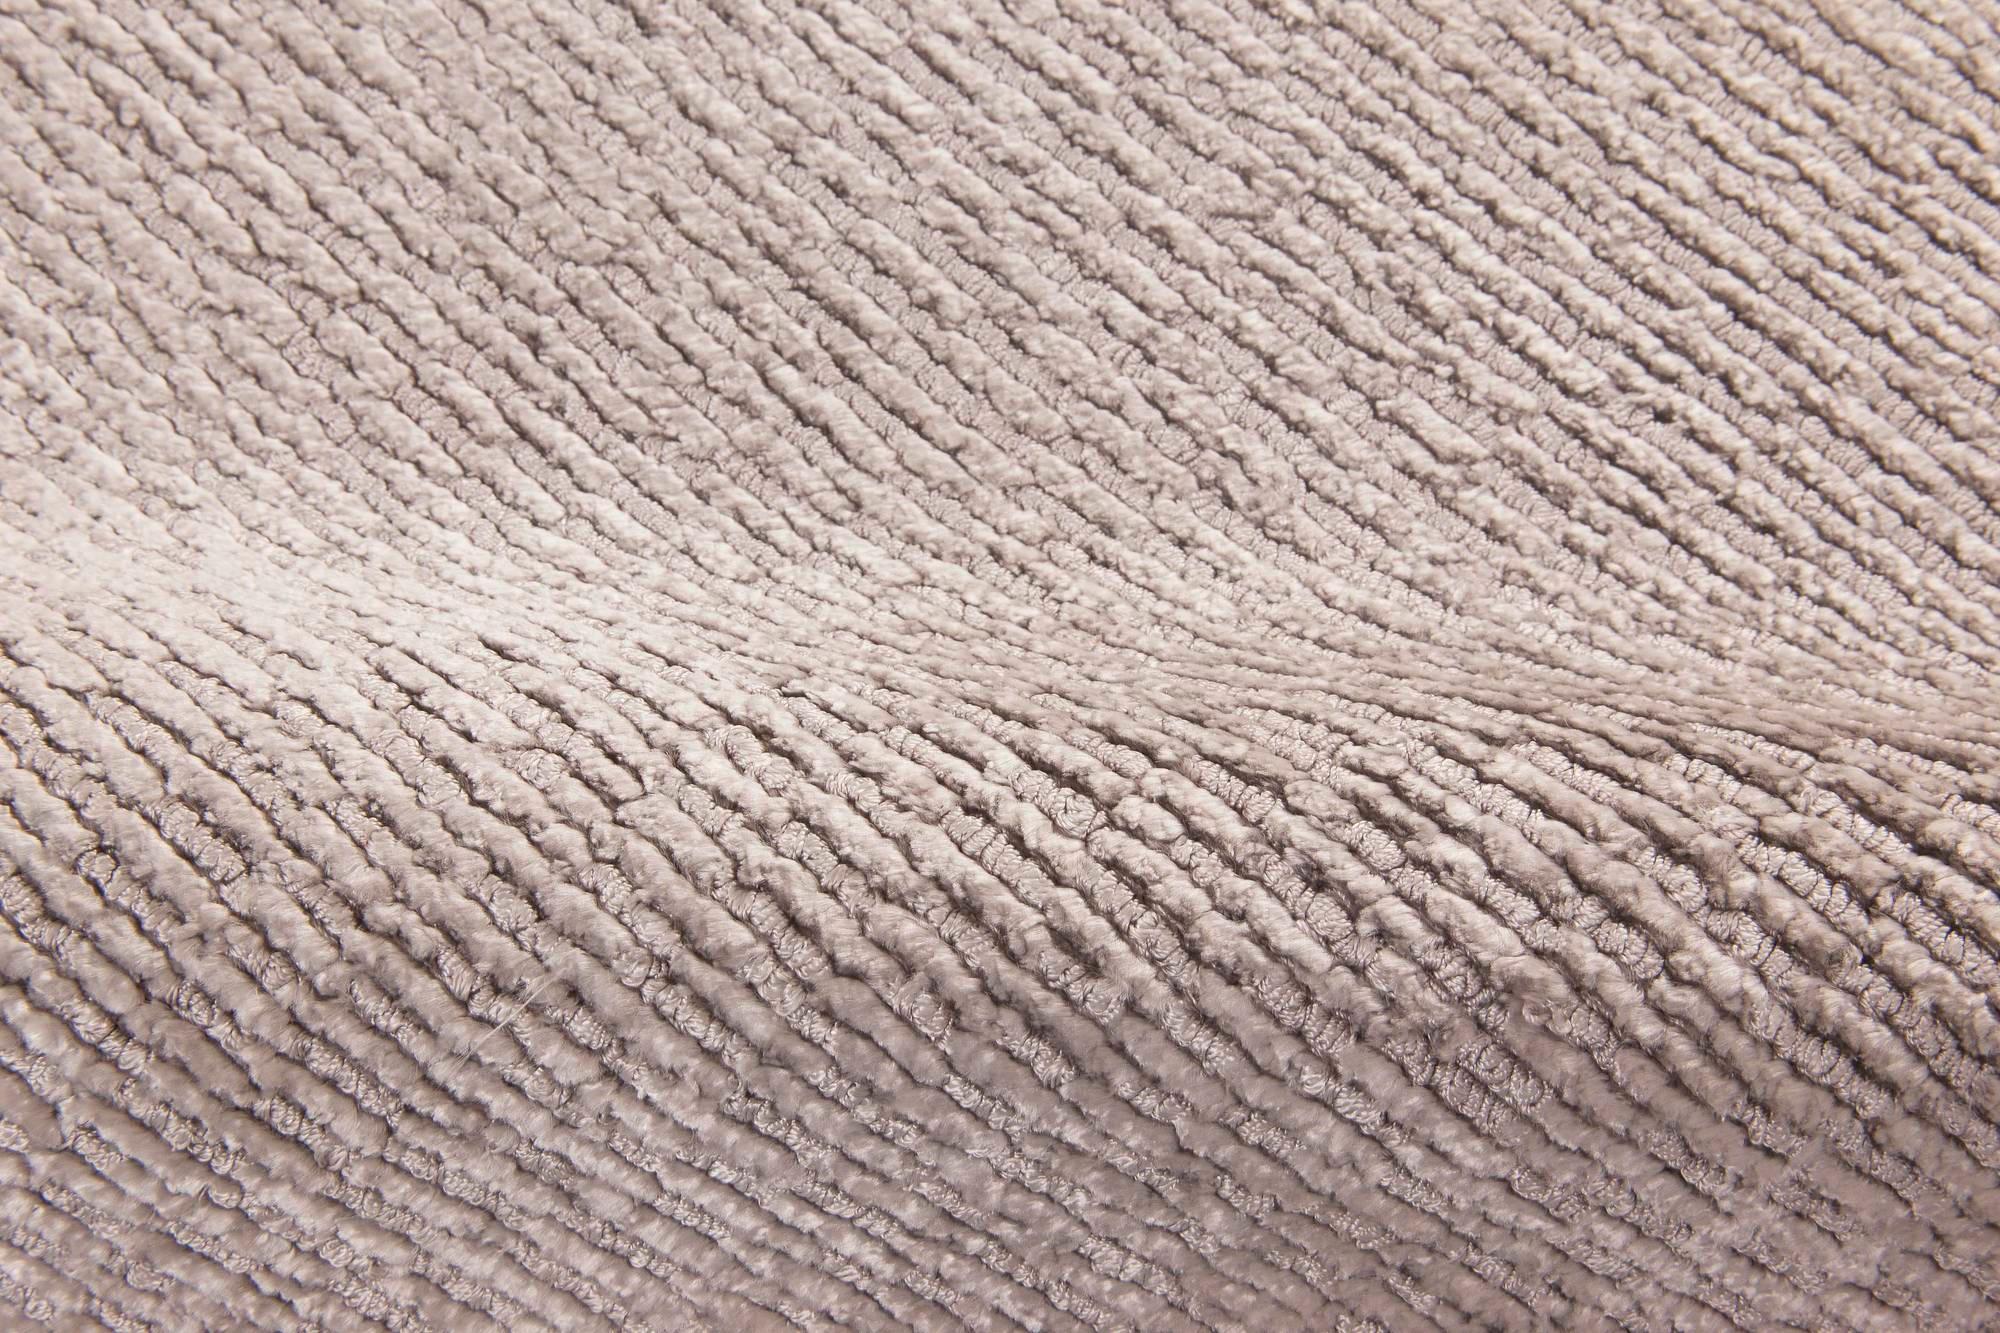 Contemporary silver silk rug
Size: 14'5